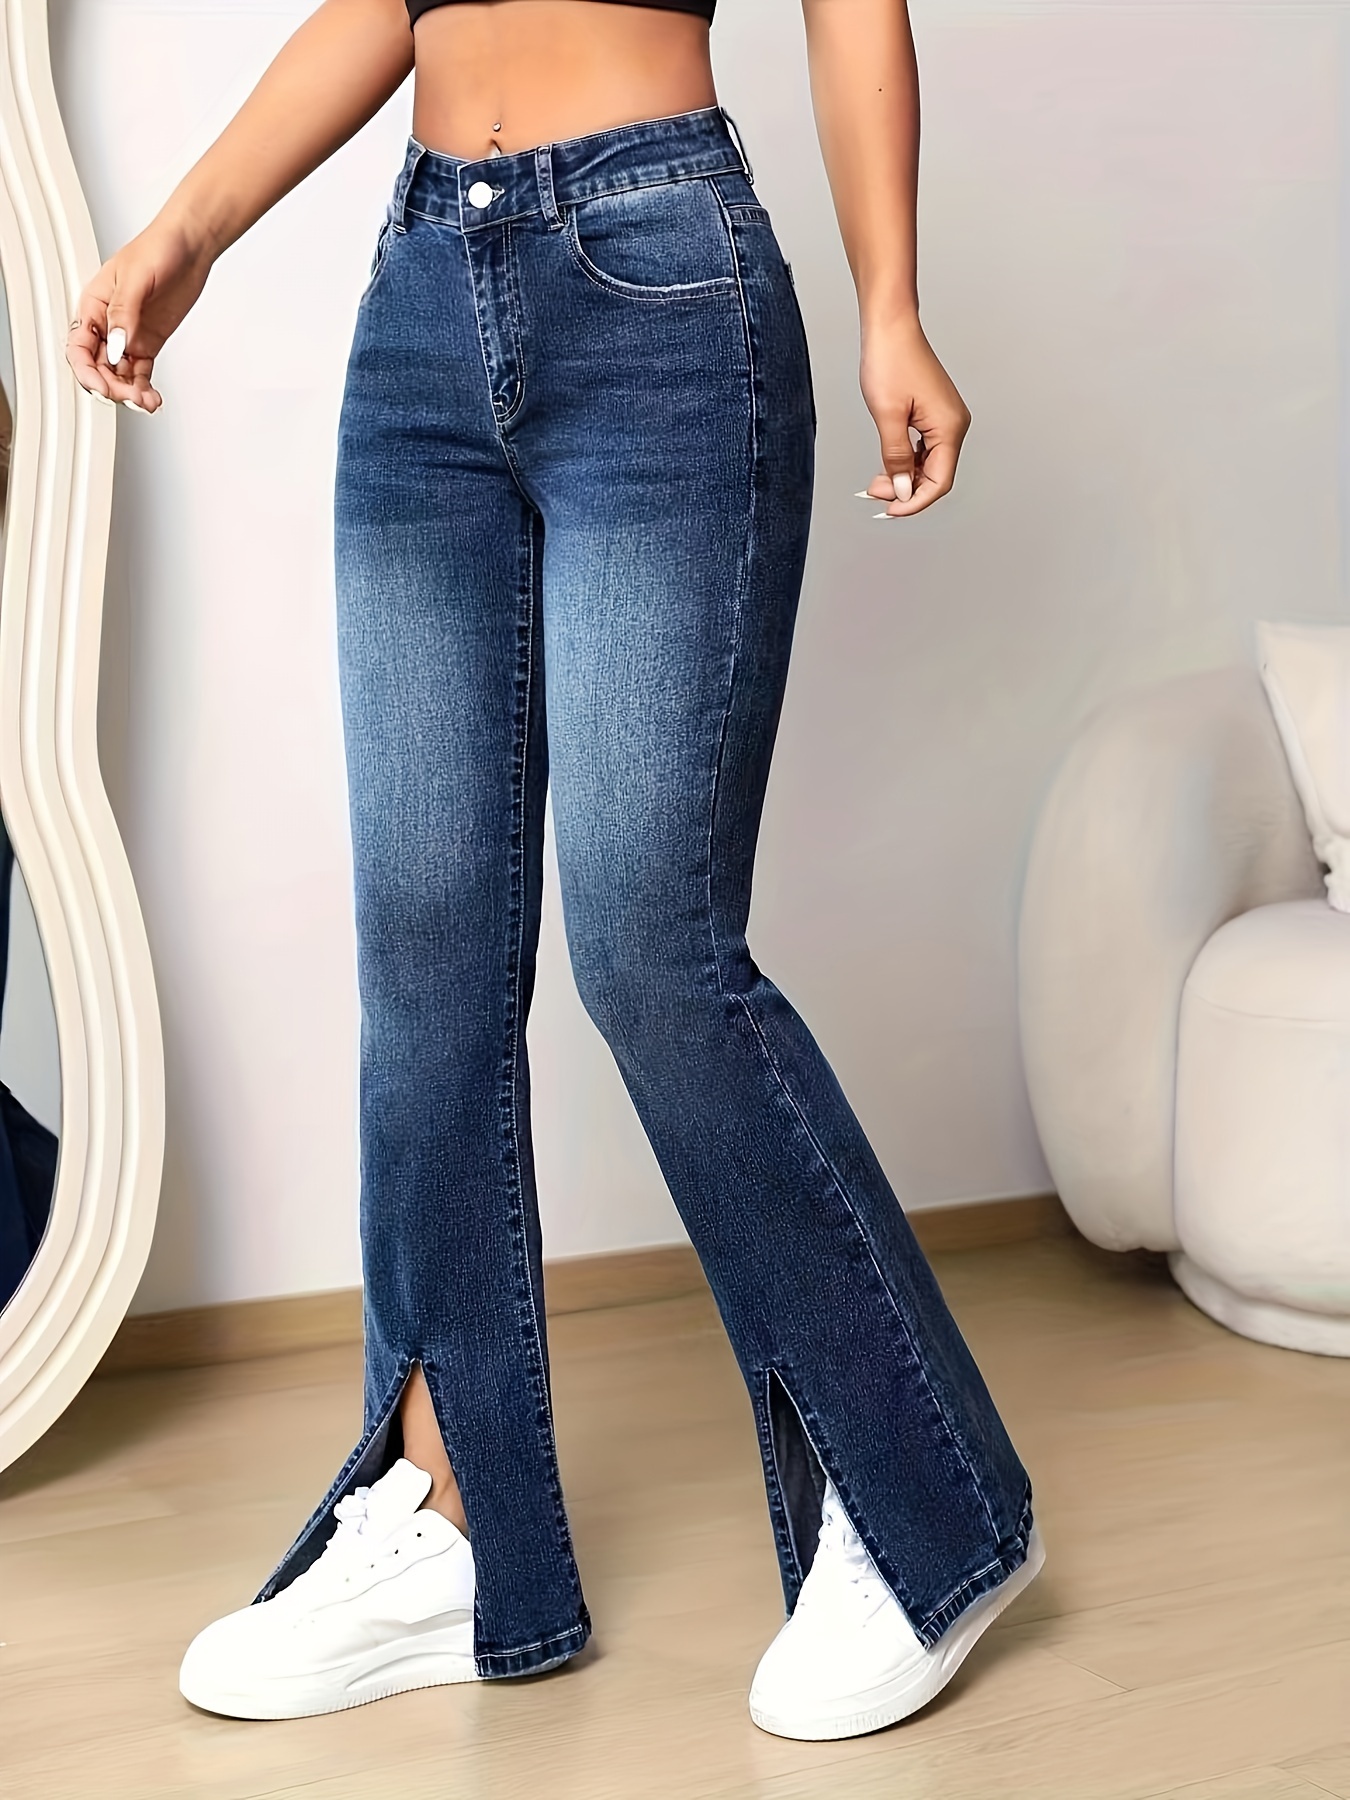 Split Hem Jeans For Women